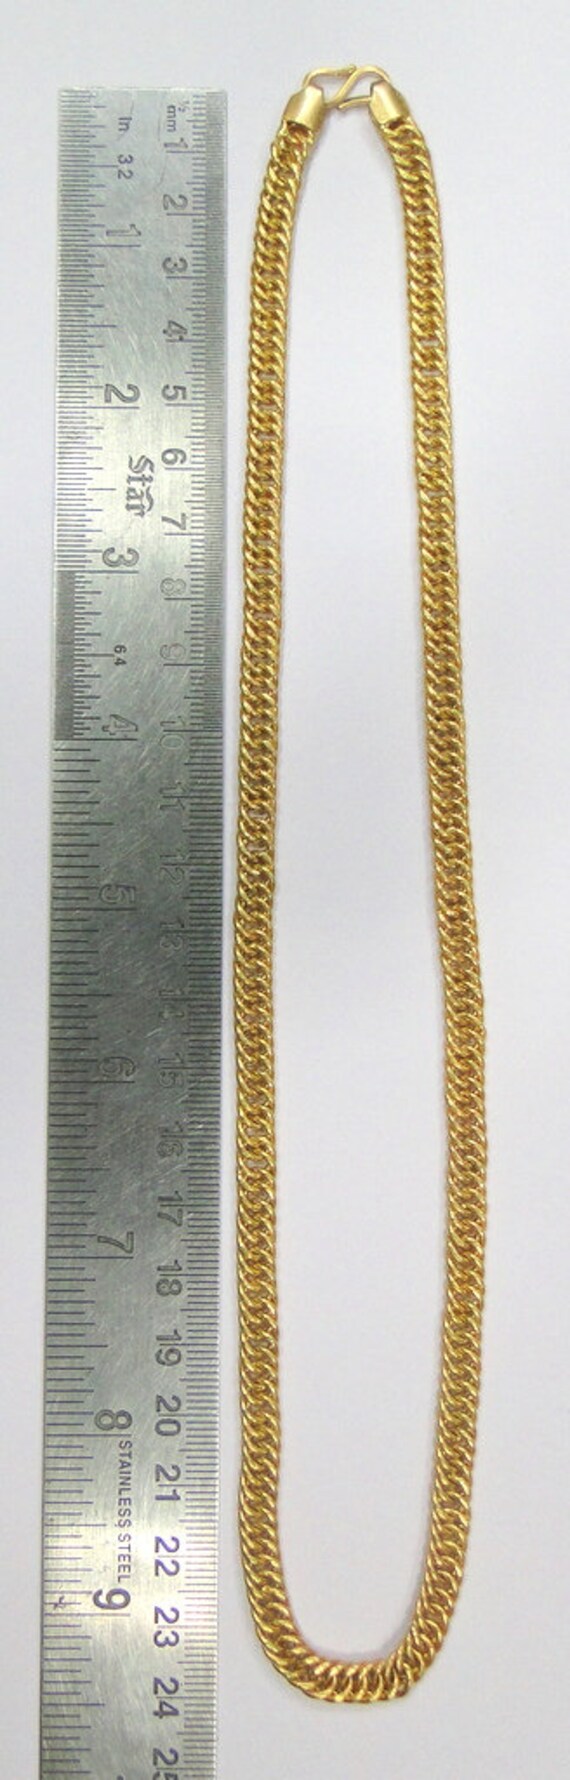 Vintage Antique Solid 22k Gold Link Chain Necklac… - image 5